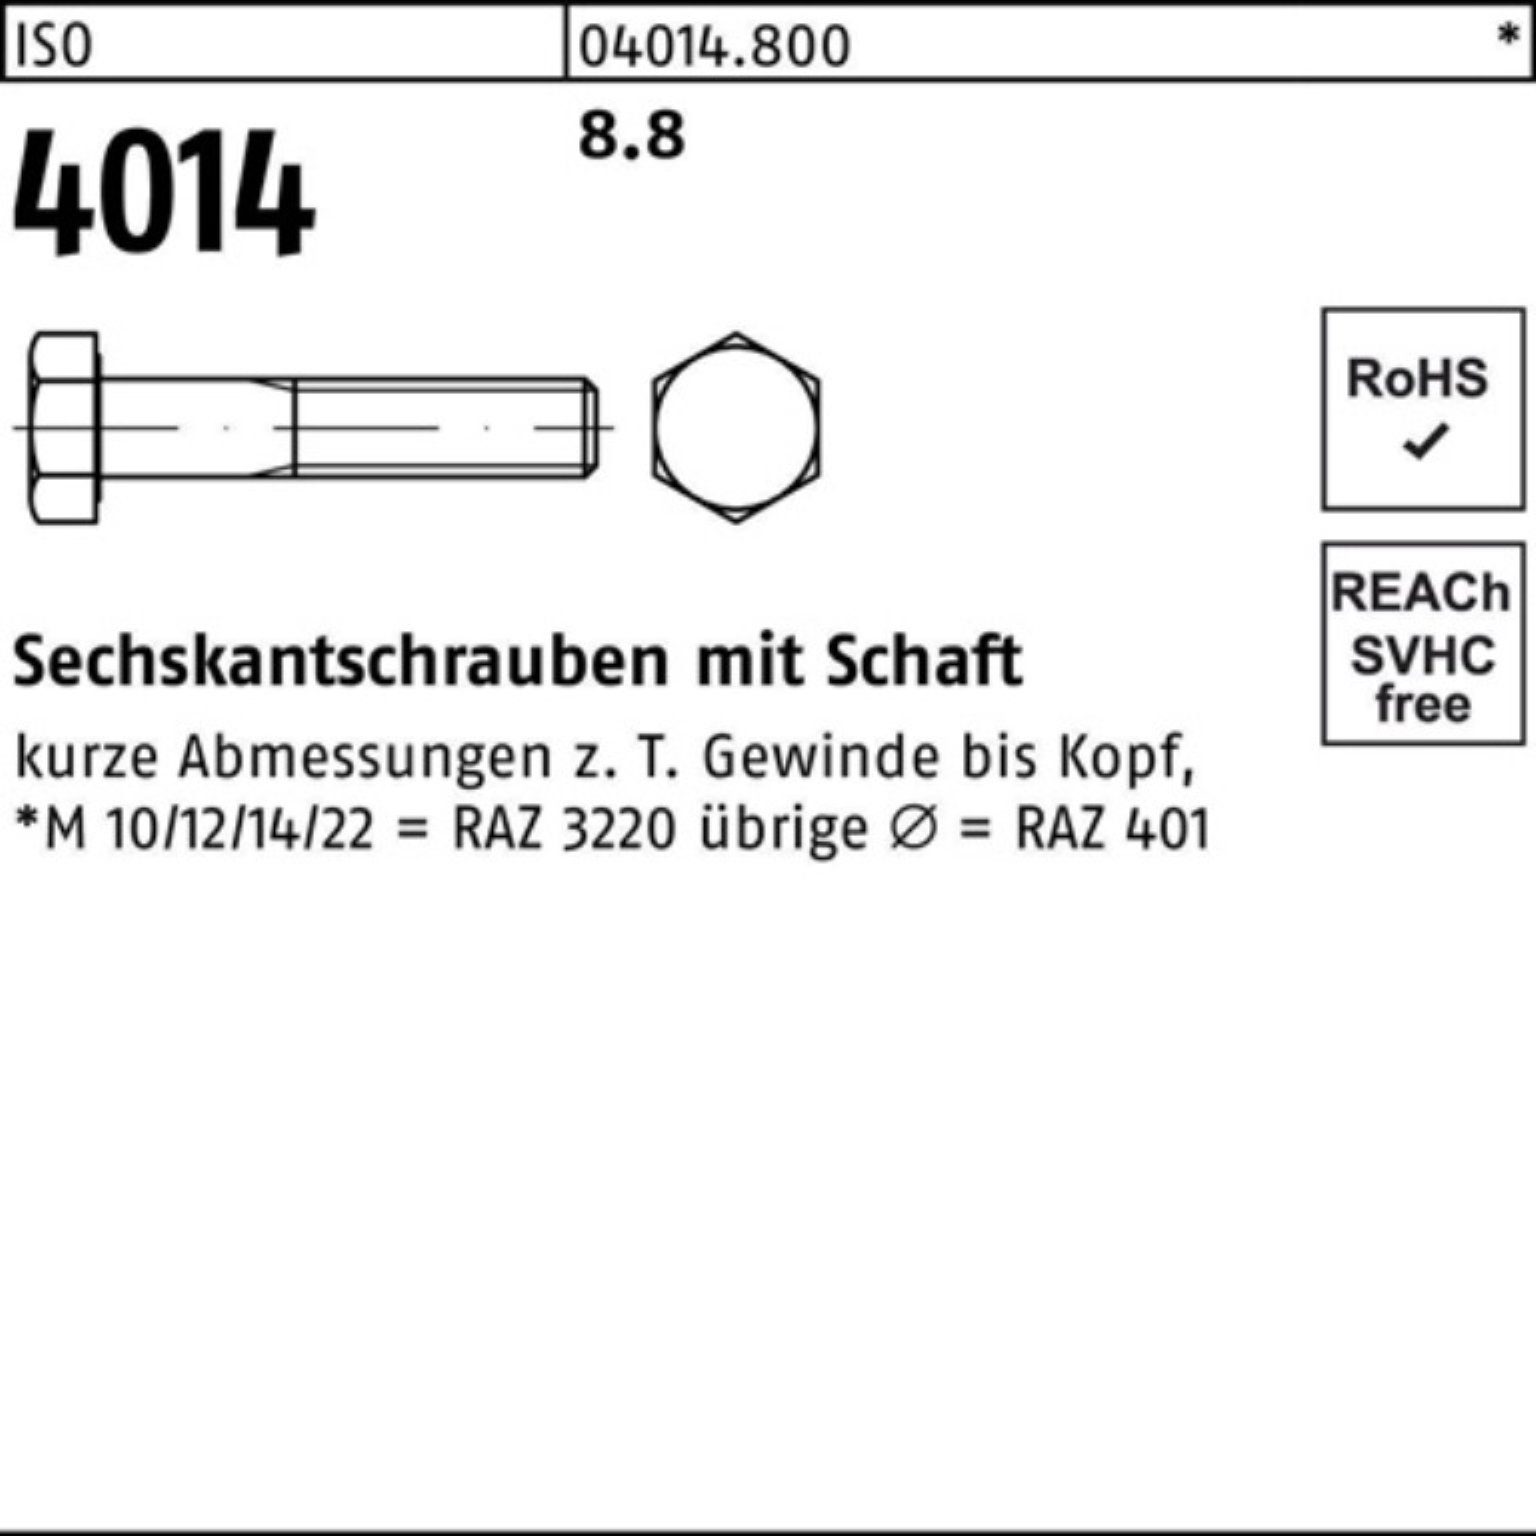 [Niedrigster Preis! Großer Rabatt!] Bufab Sechskantschraube 100er IS Stück Schaft 4014 M12x Pack ISO Sechskantschraube 25 350 8.8